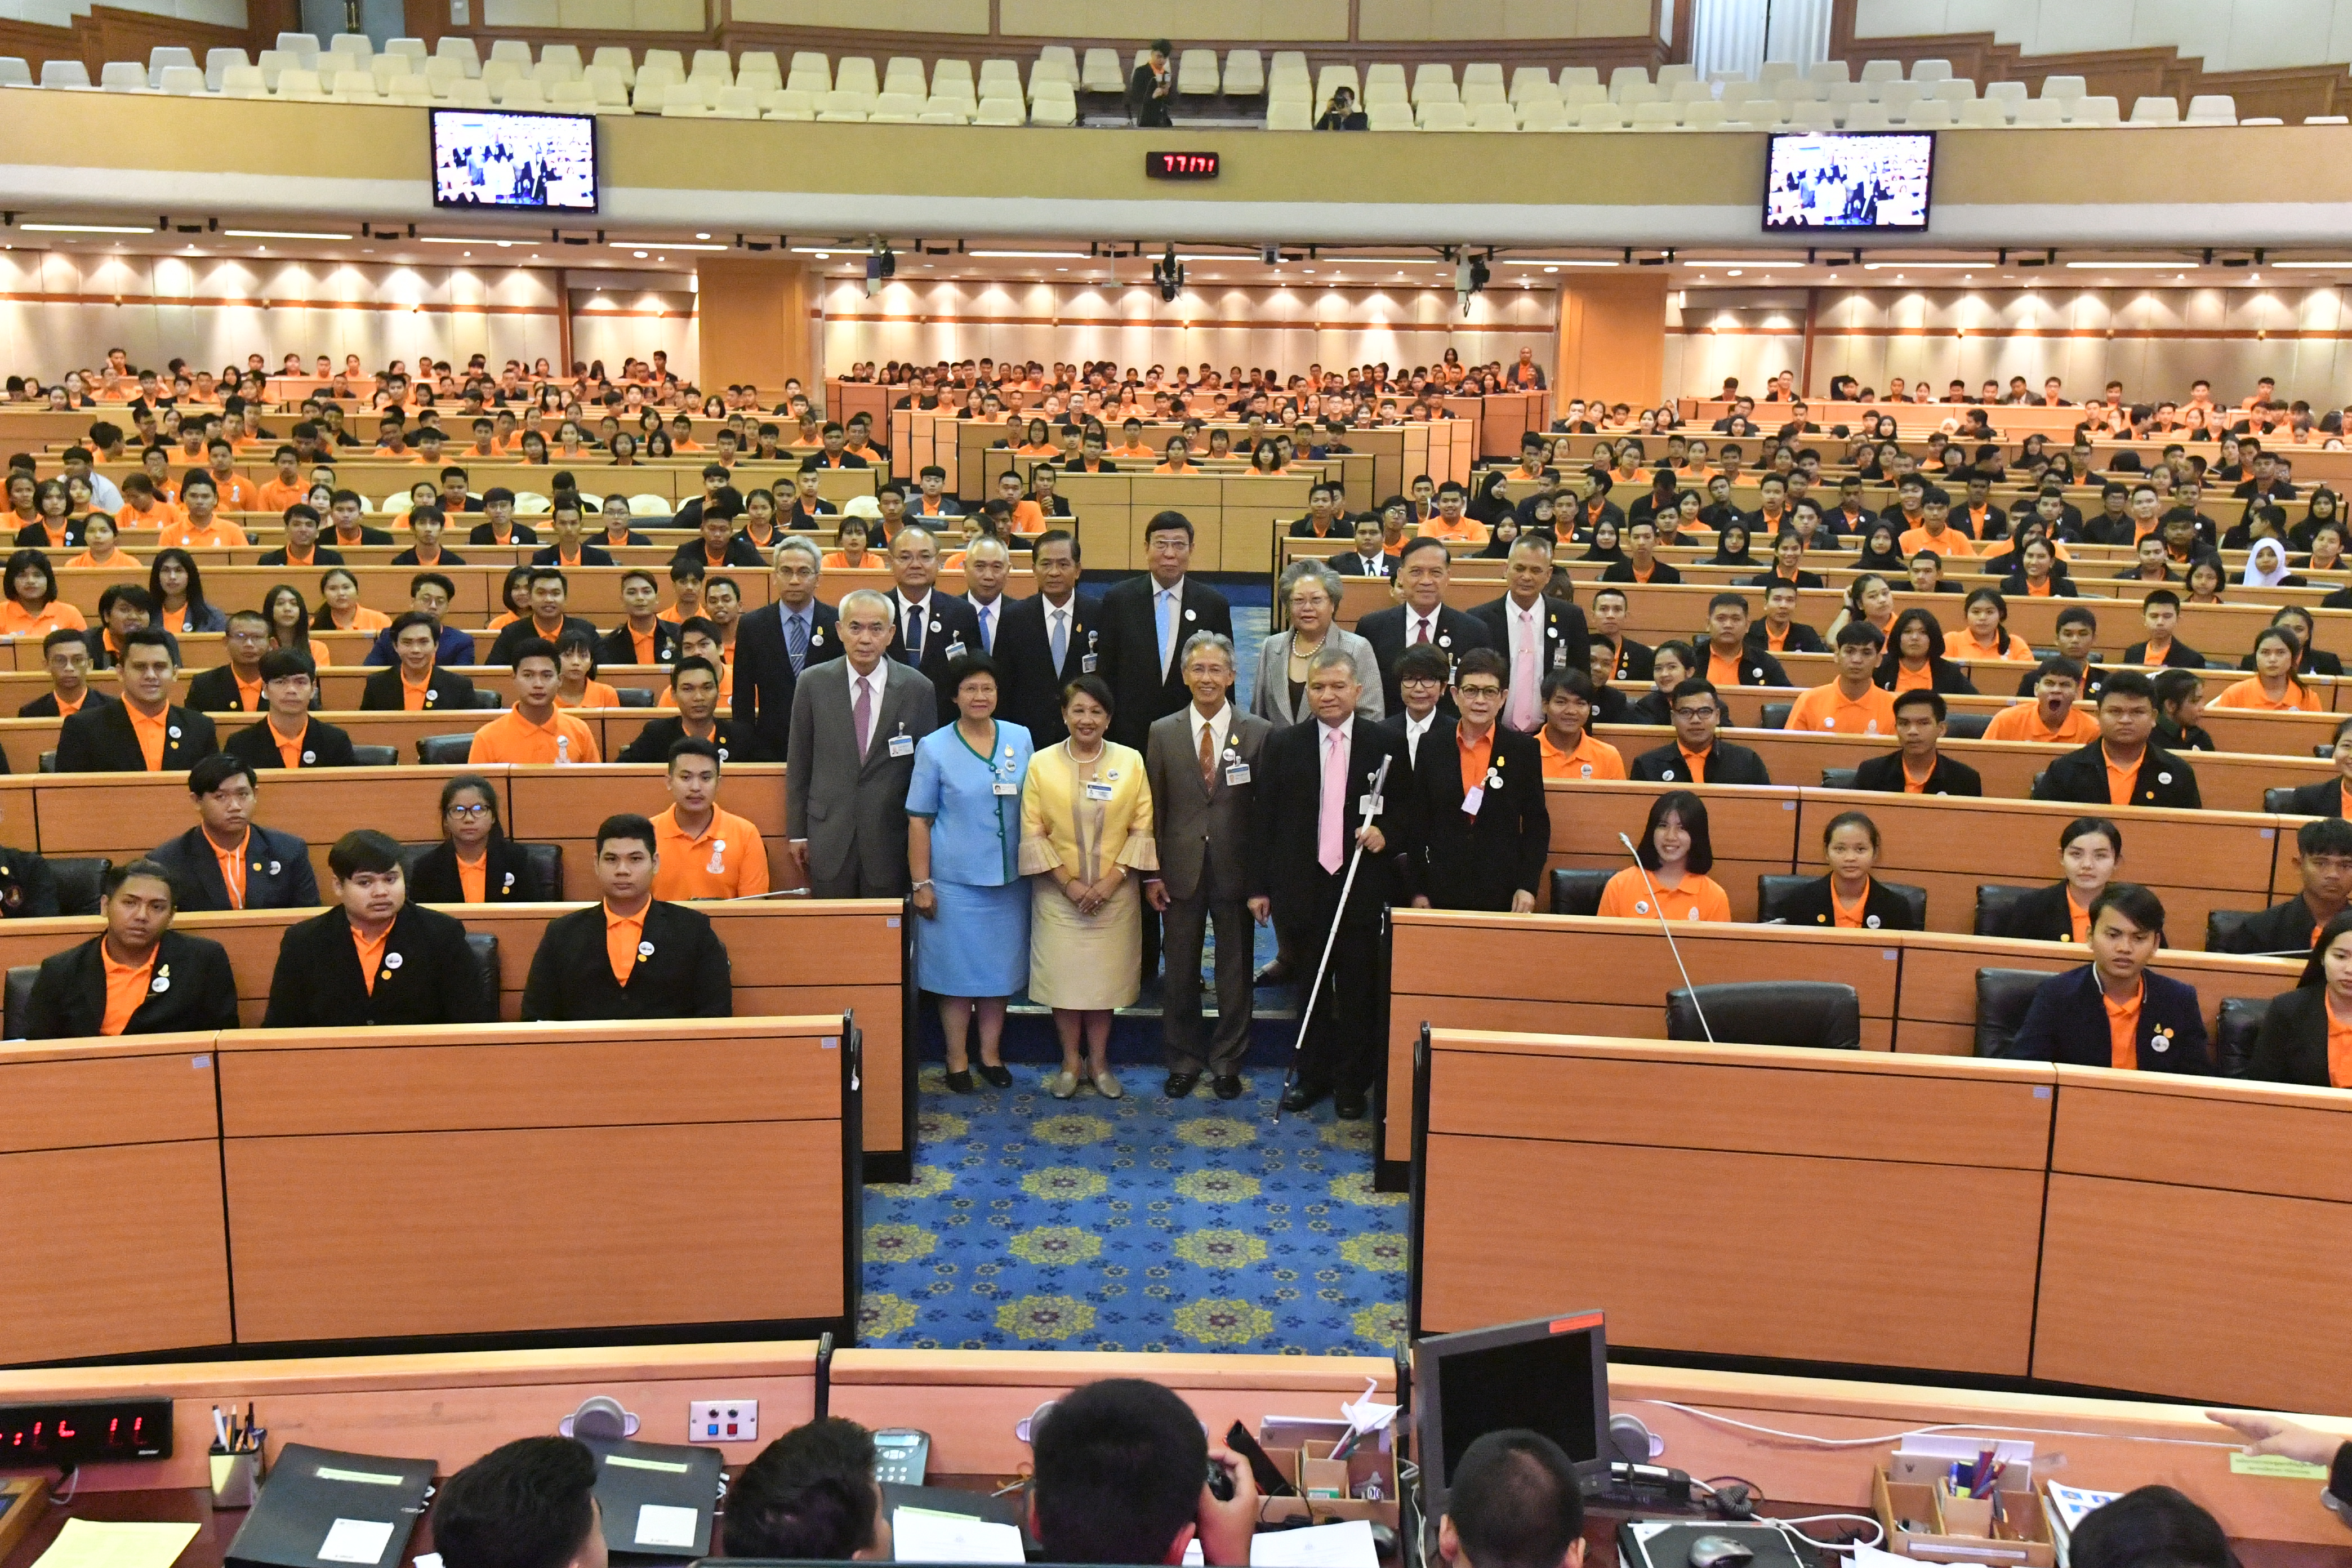 23 November 2018, at the Assembly Hall, Parliament Building 1, Bangkok